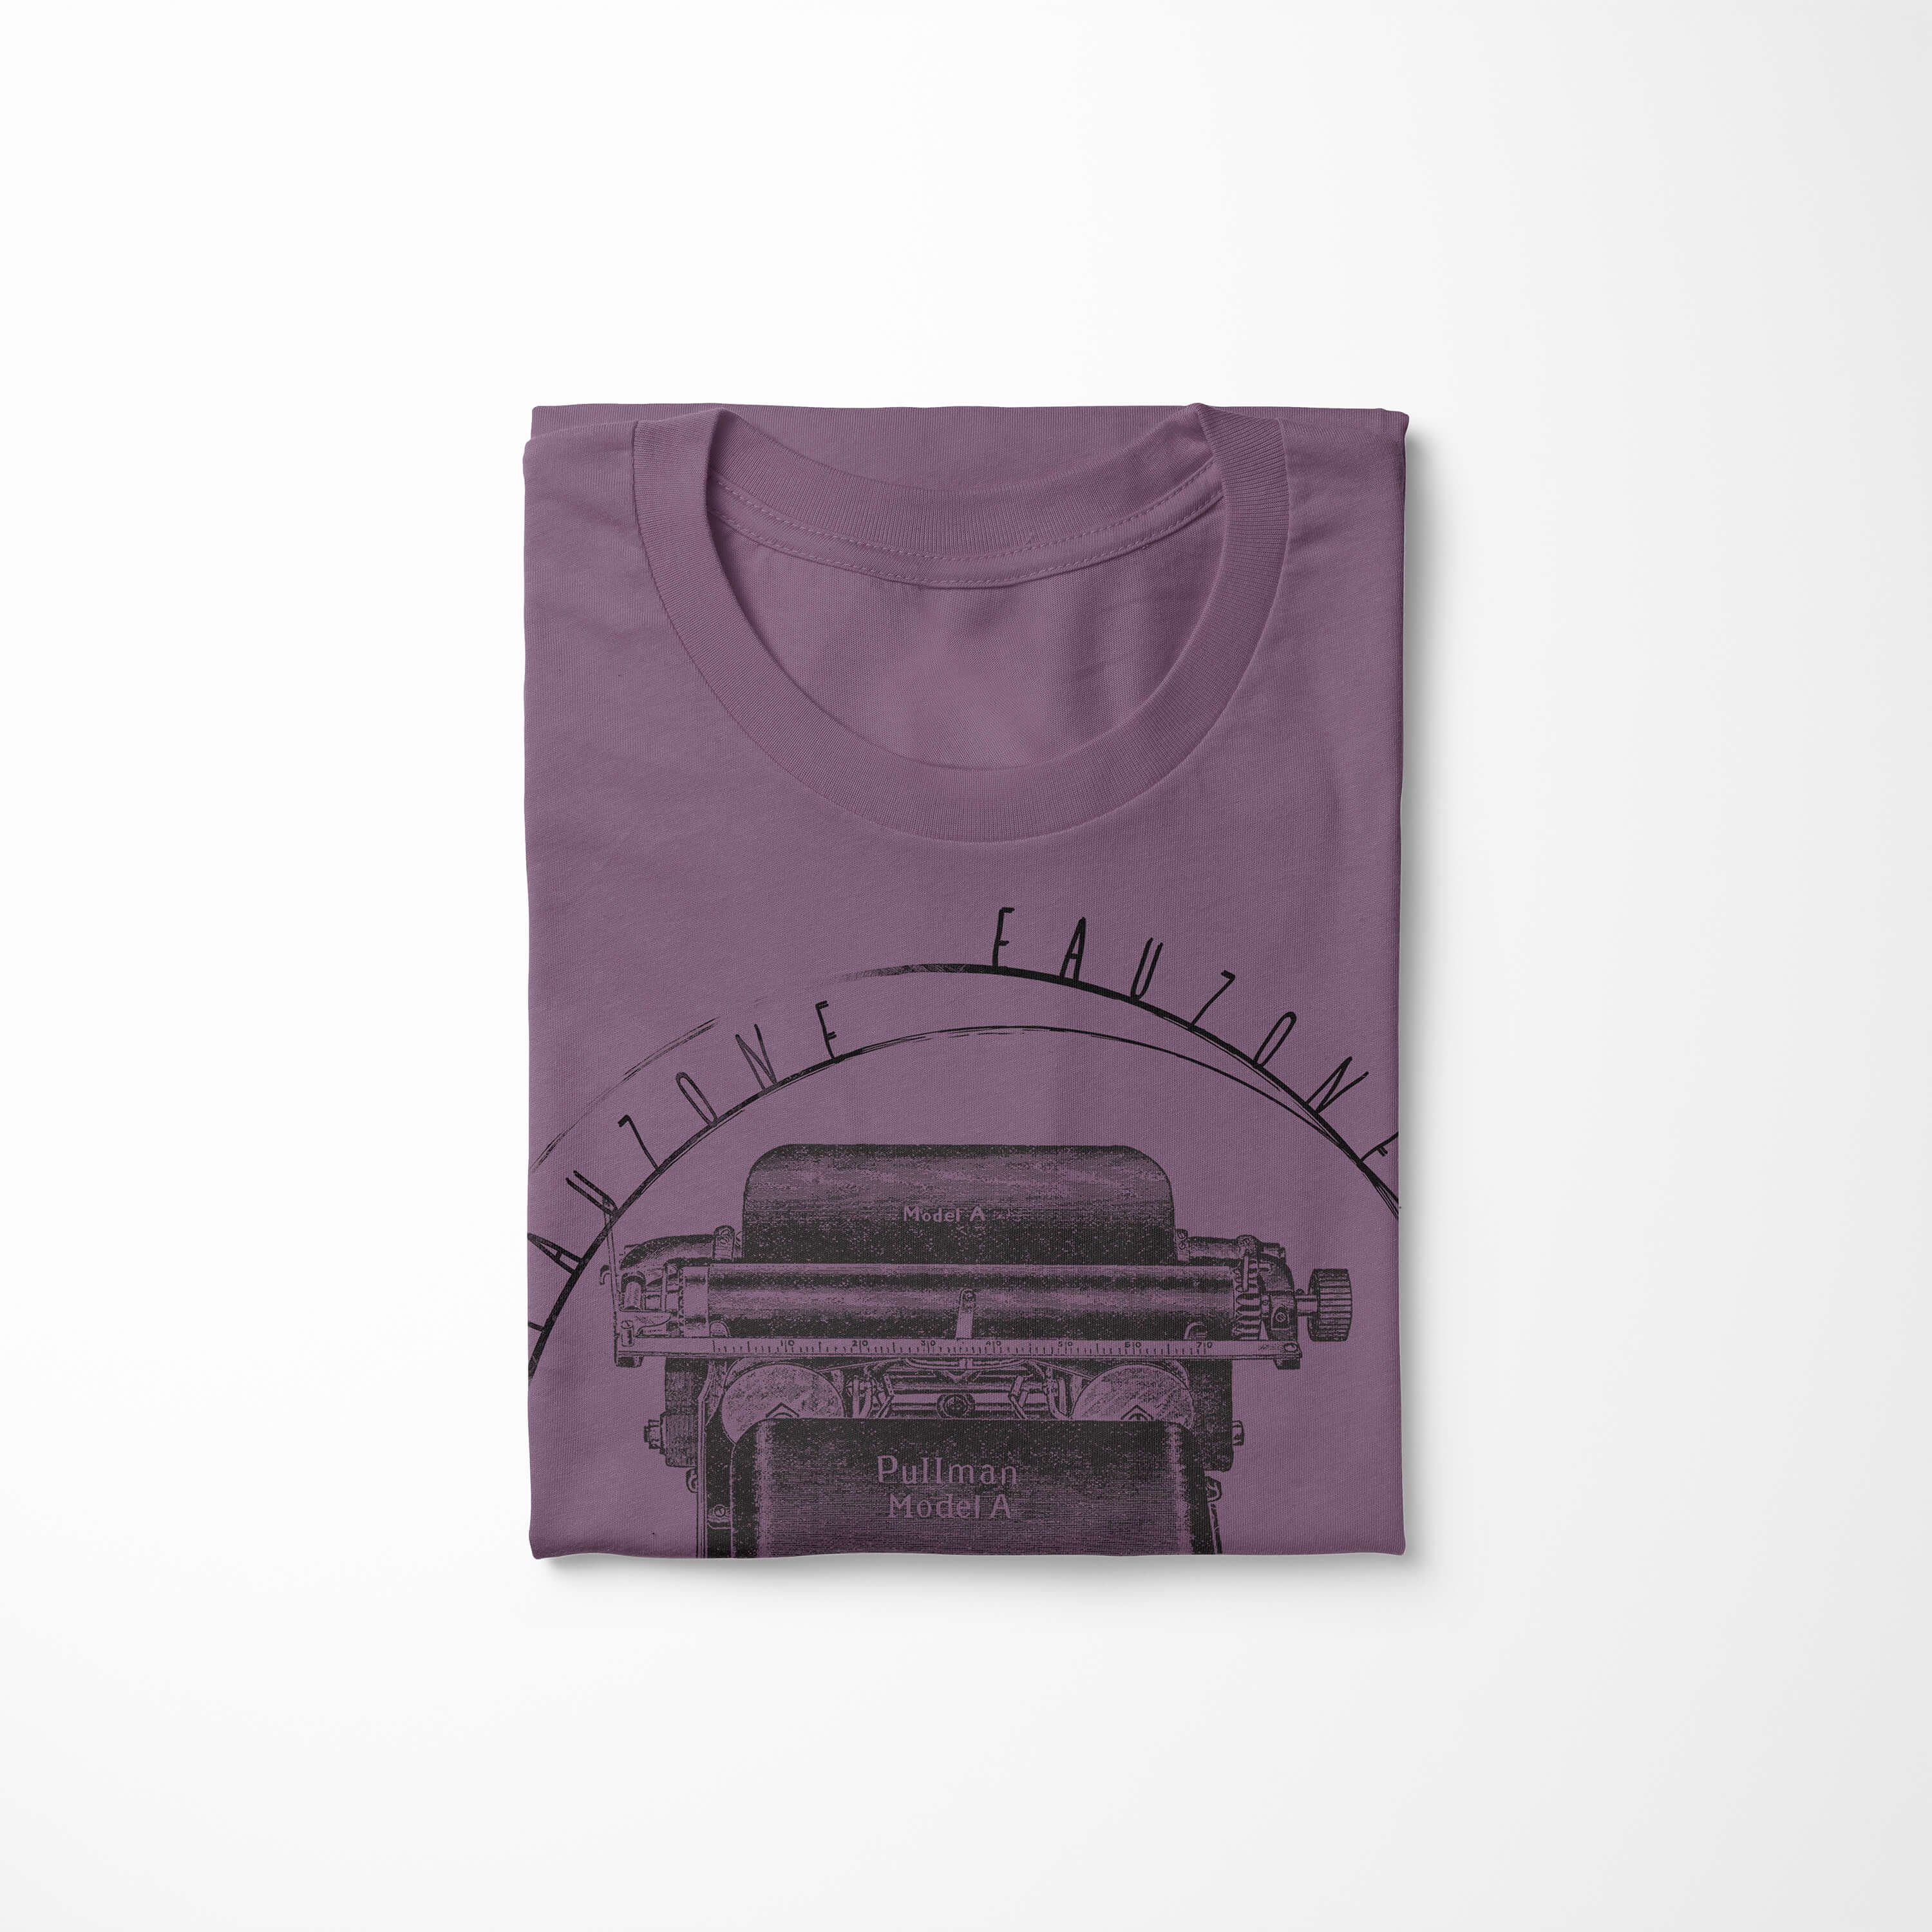 Vintage Shiraz Herren T-Shirt Schreibmaschine T-Shirt Art Sinus